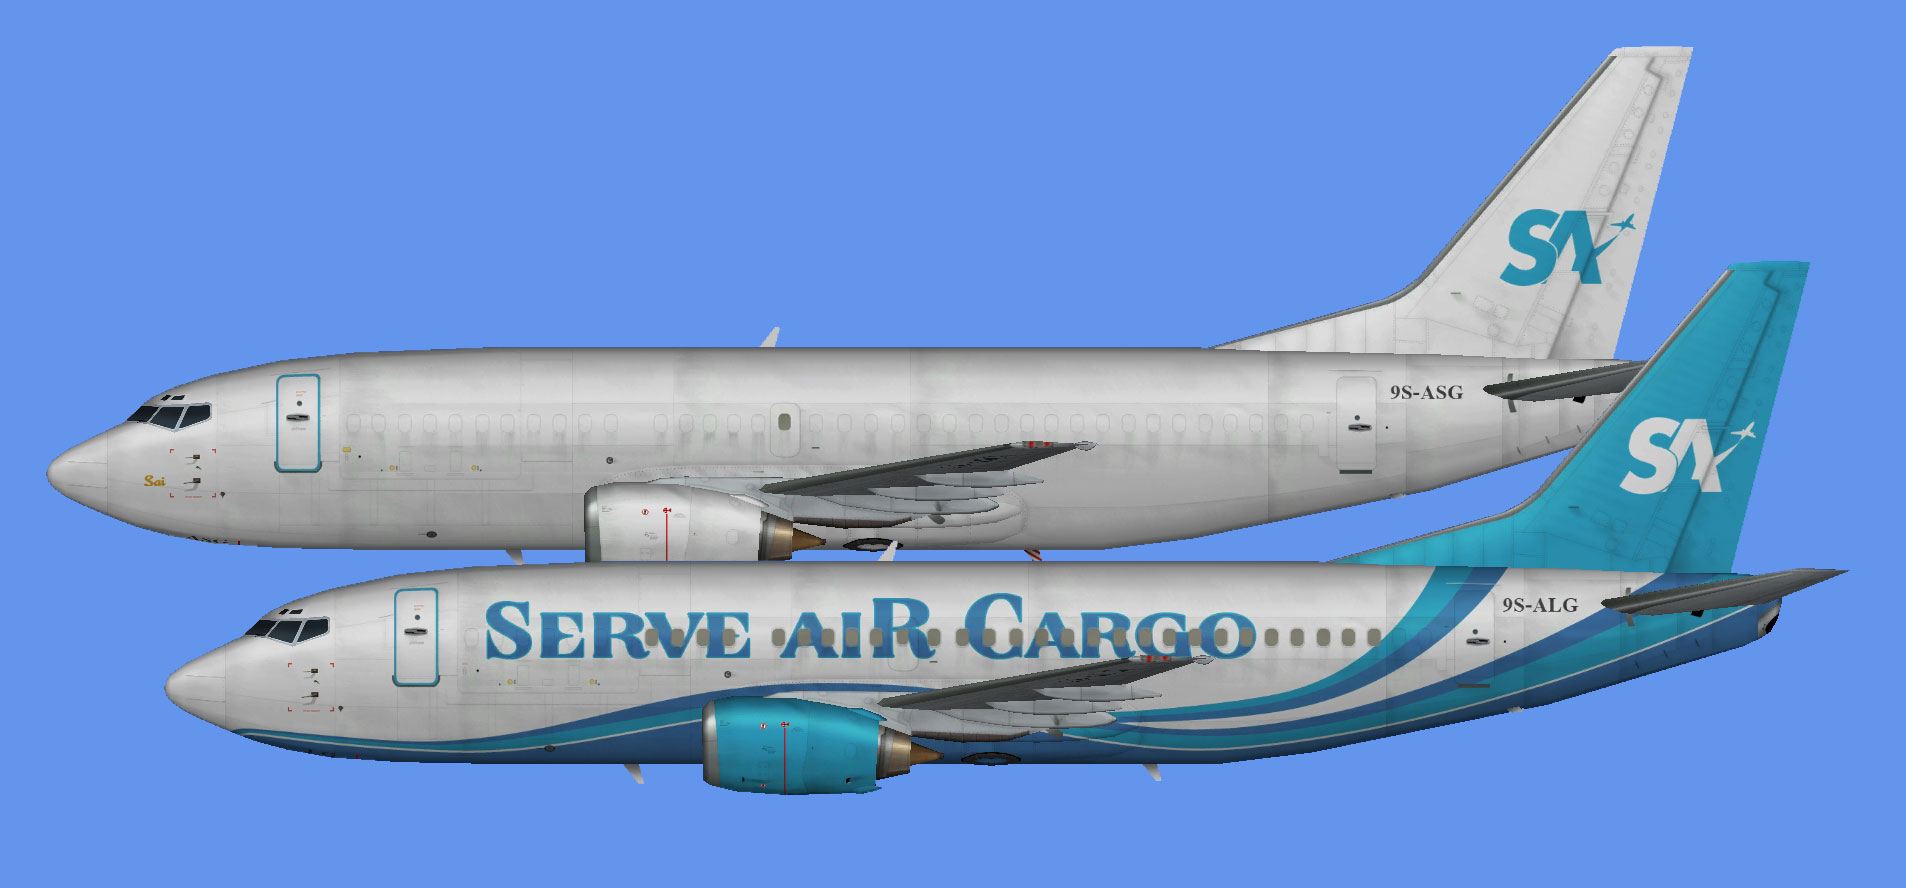 Serve Air Cargo Boeing 737-300